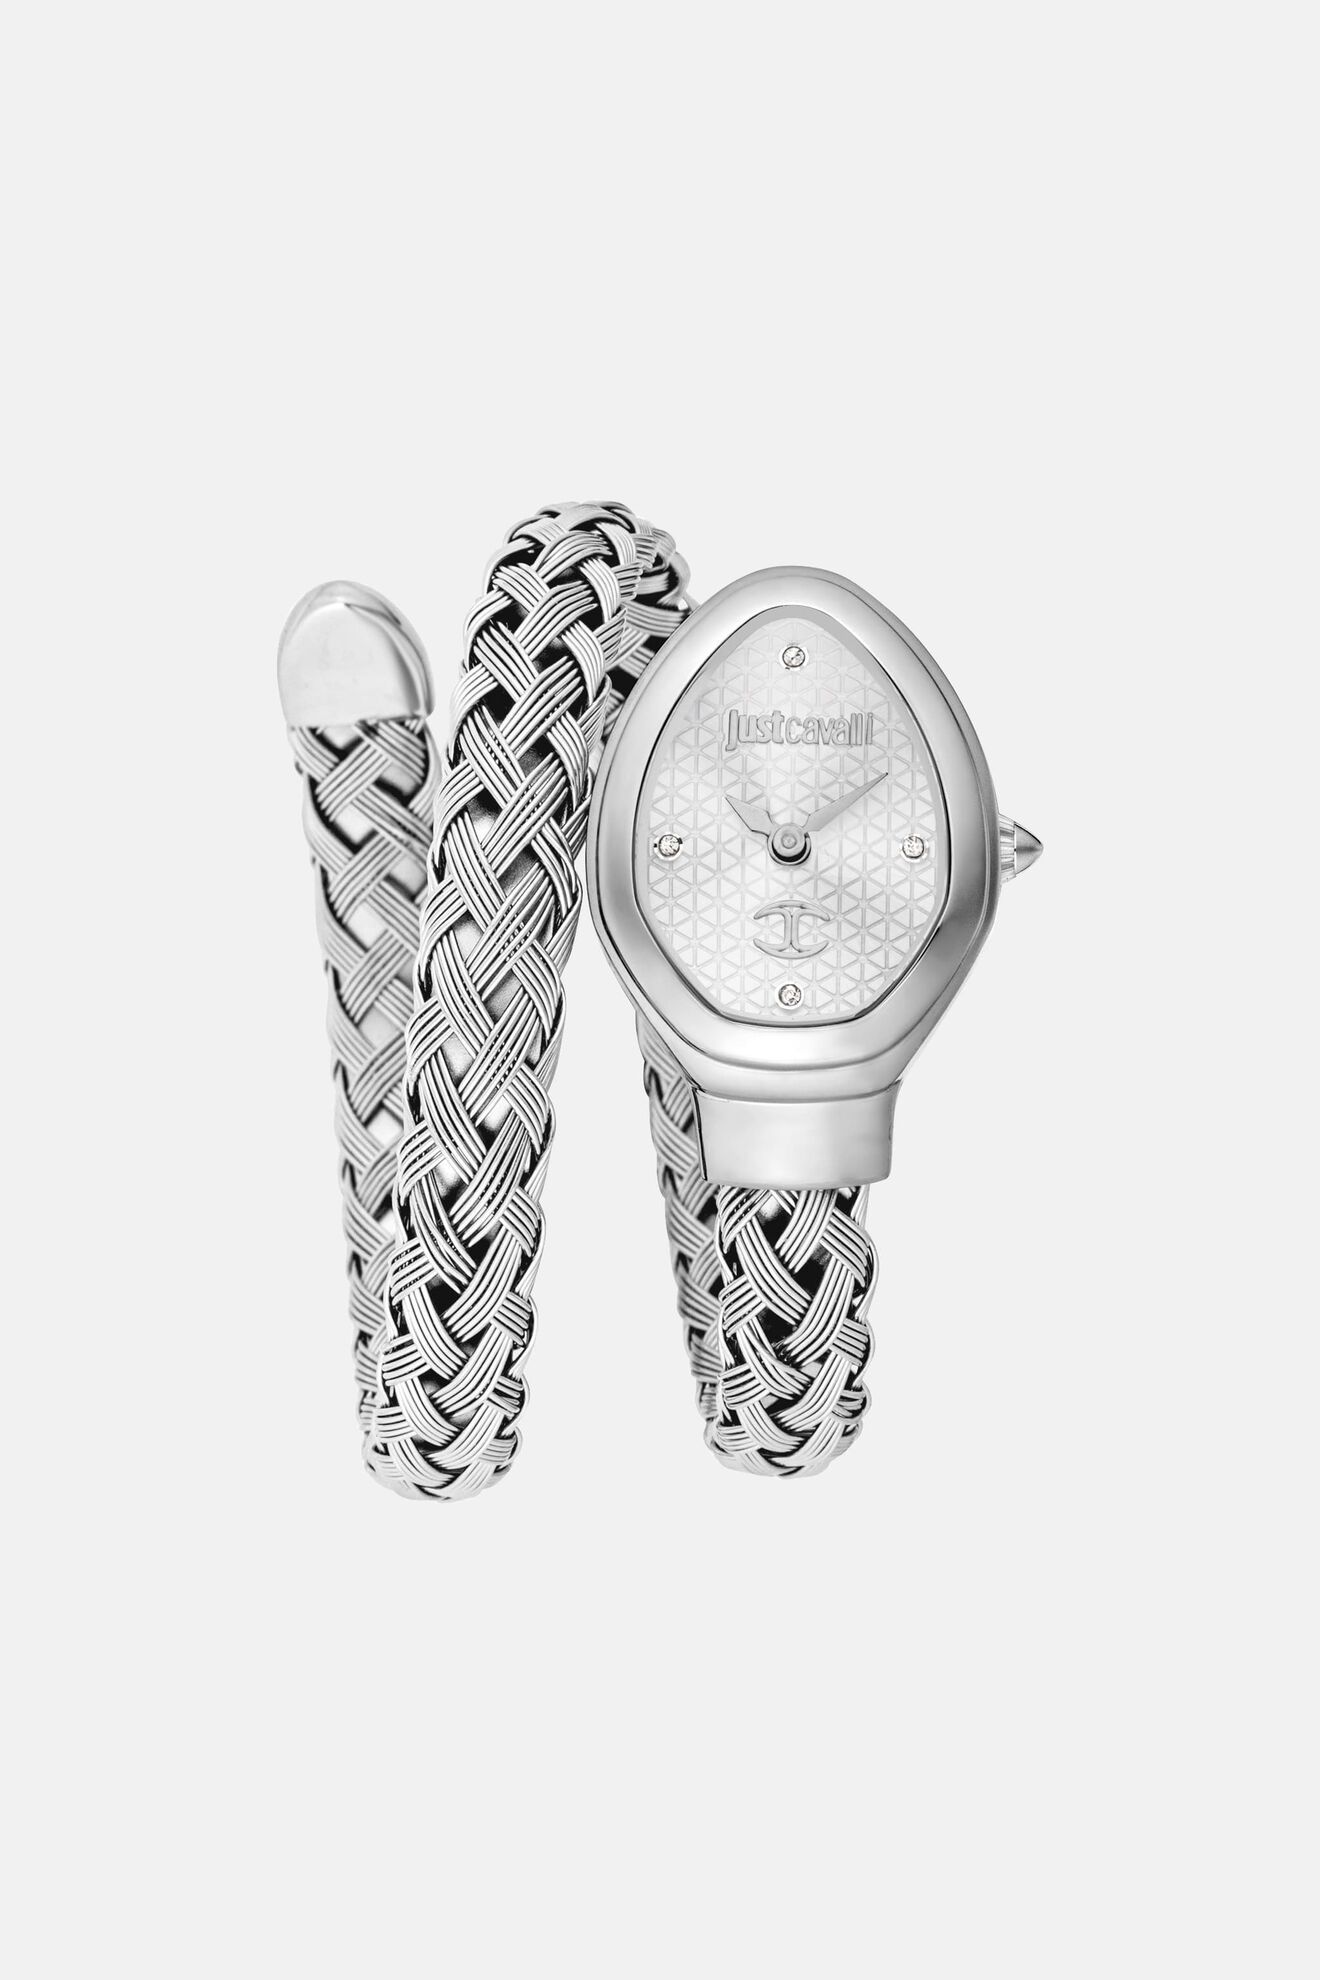 JUST CAVALLI Women's Watches – i-Watch